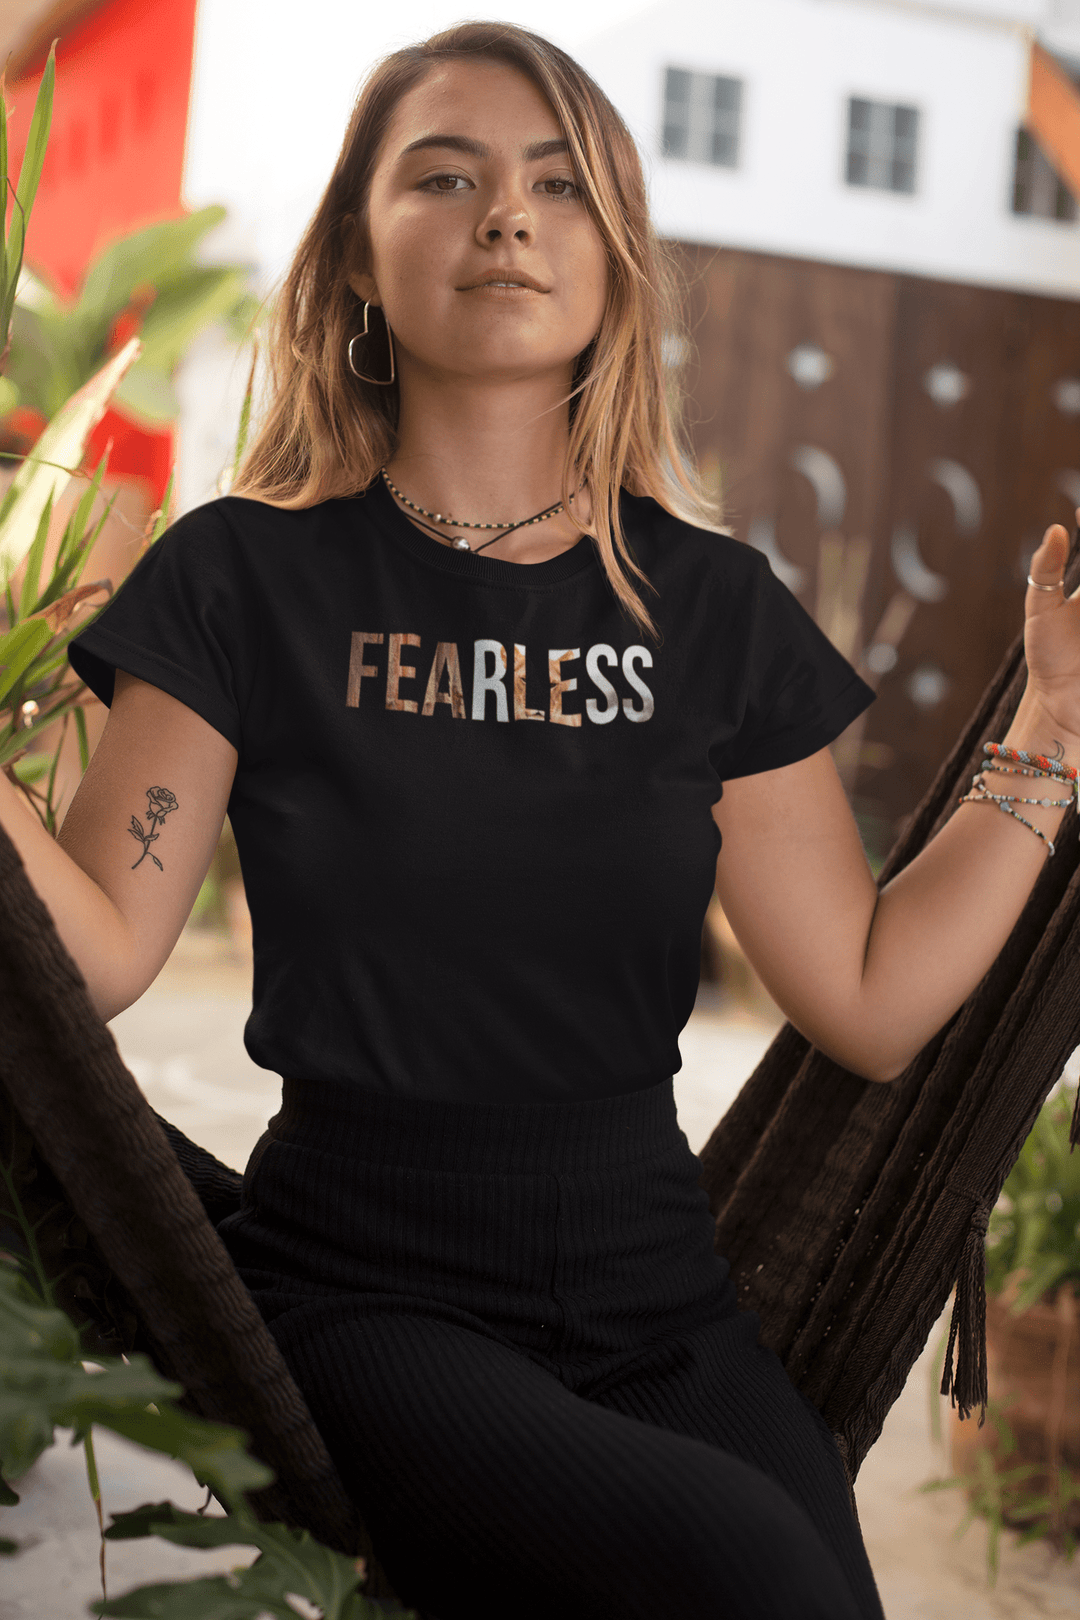 Fearless Women T-shirt.